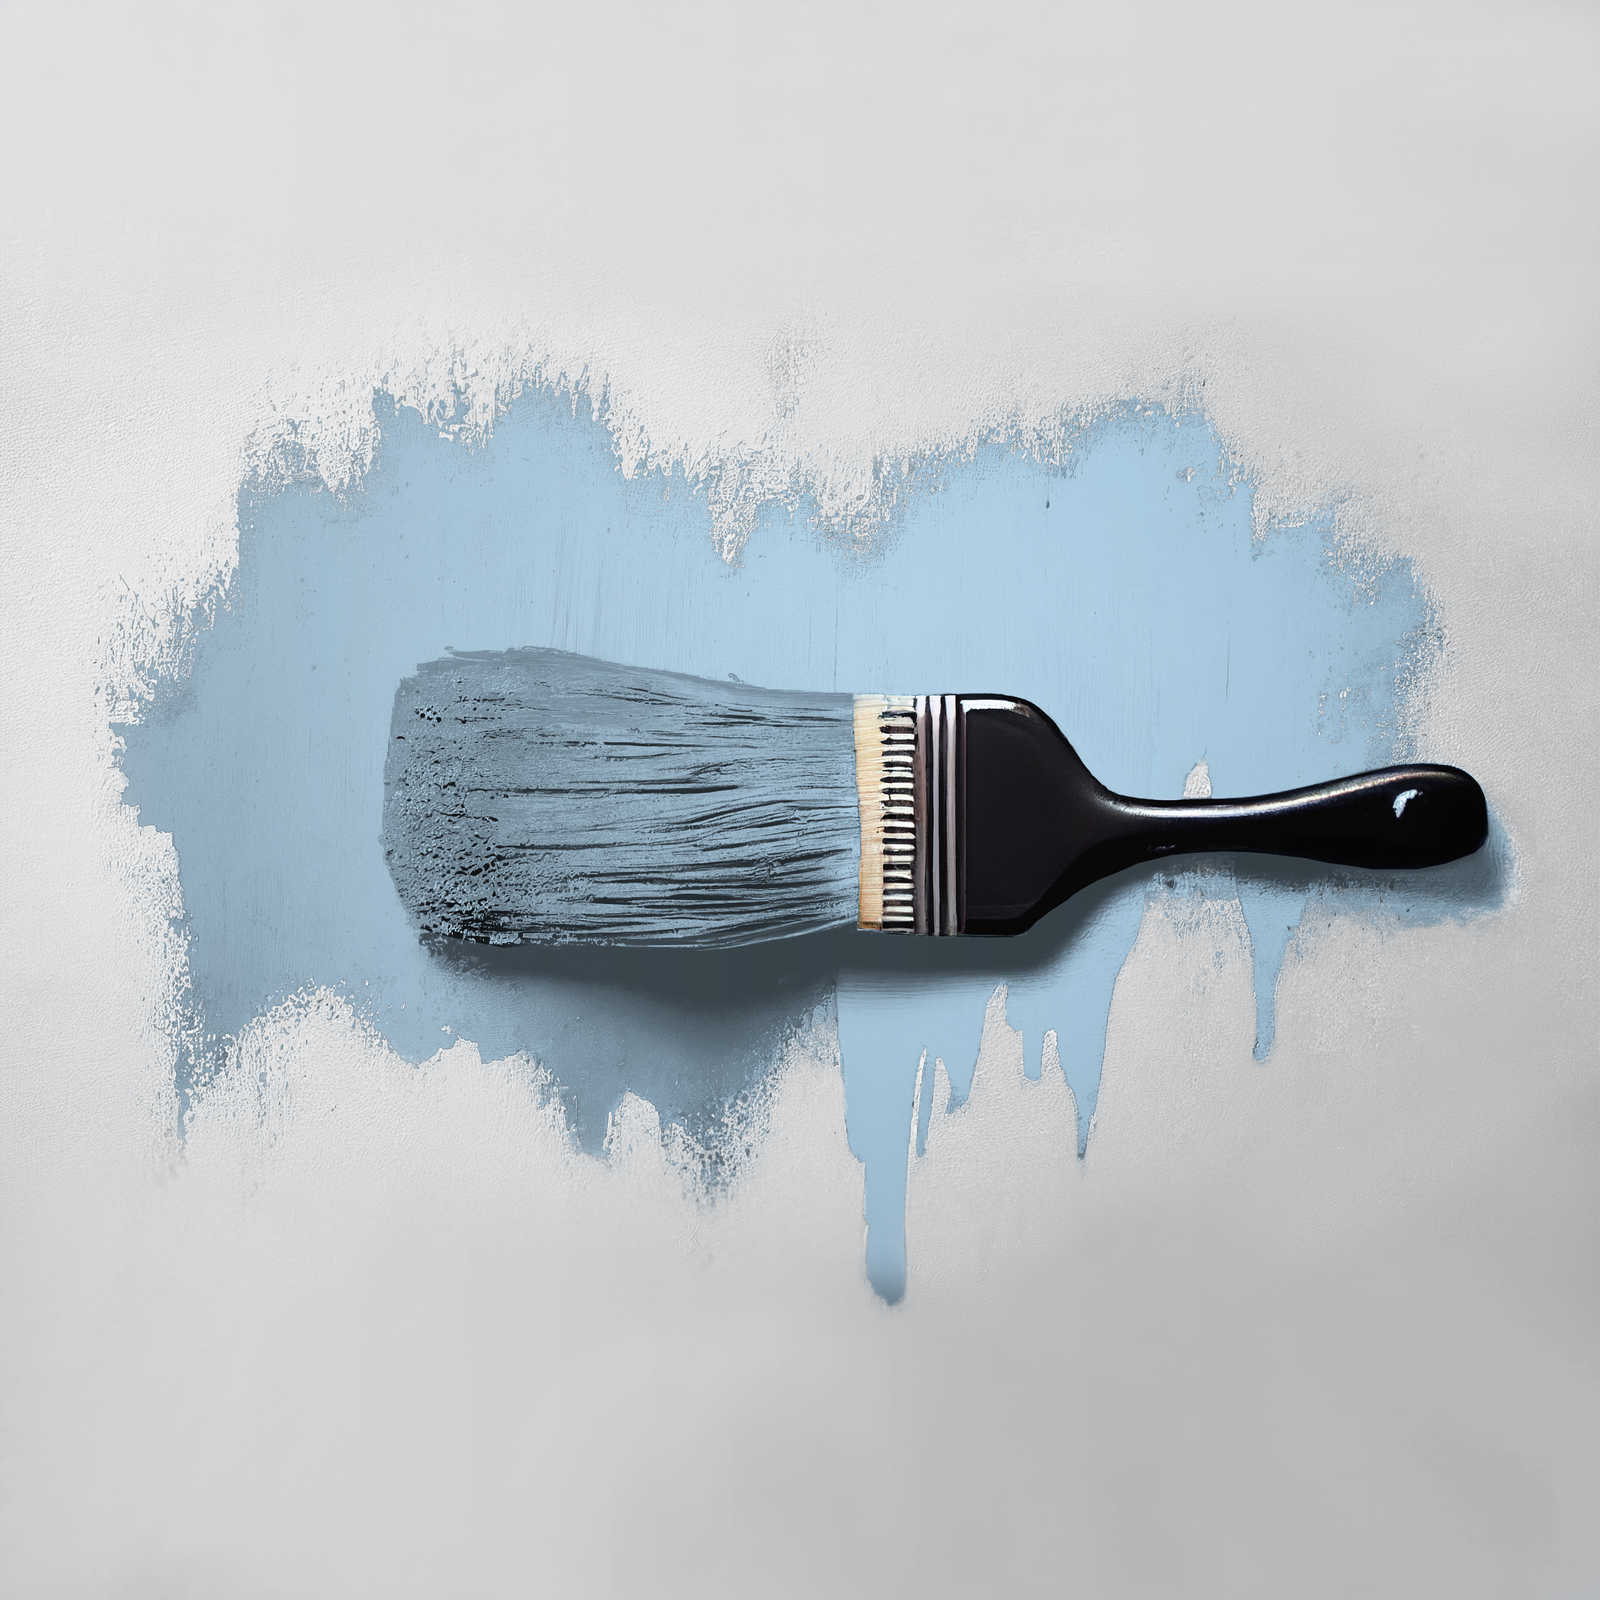             Pintura mural TCK3003 »Soft Sky« en azul cielo amistoso – 2,5 litro
        